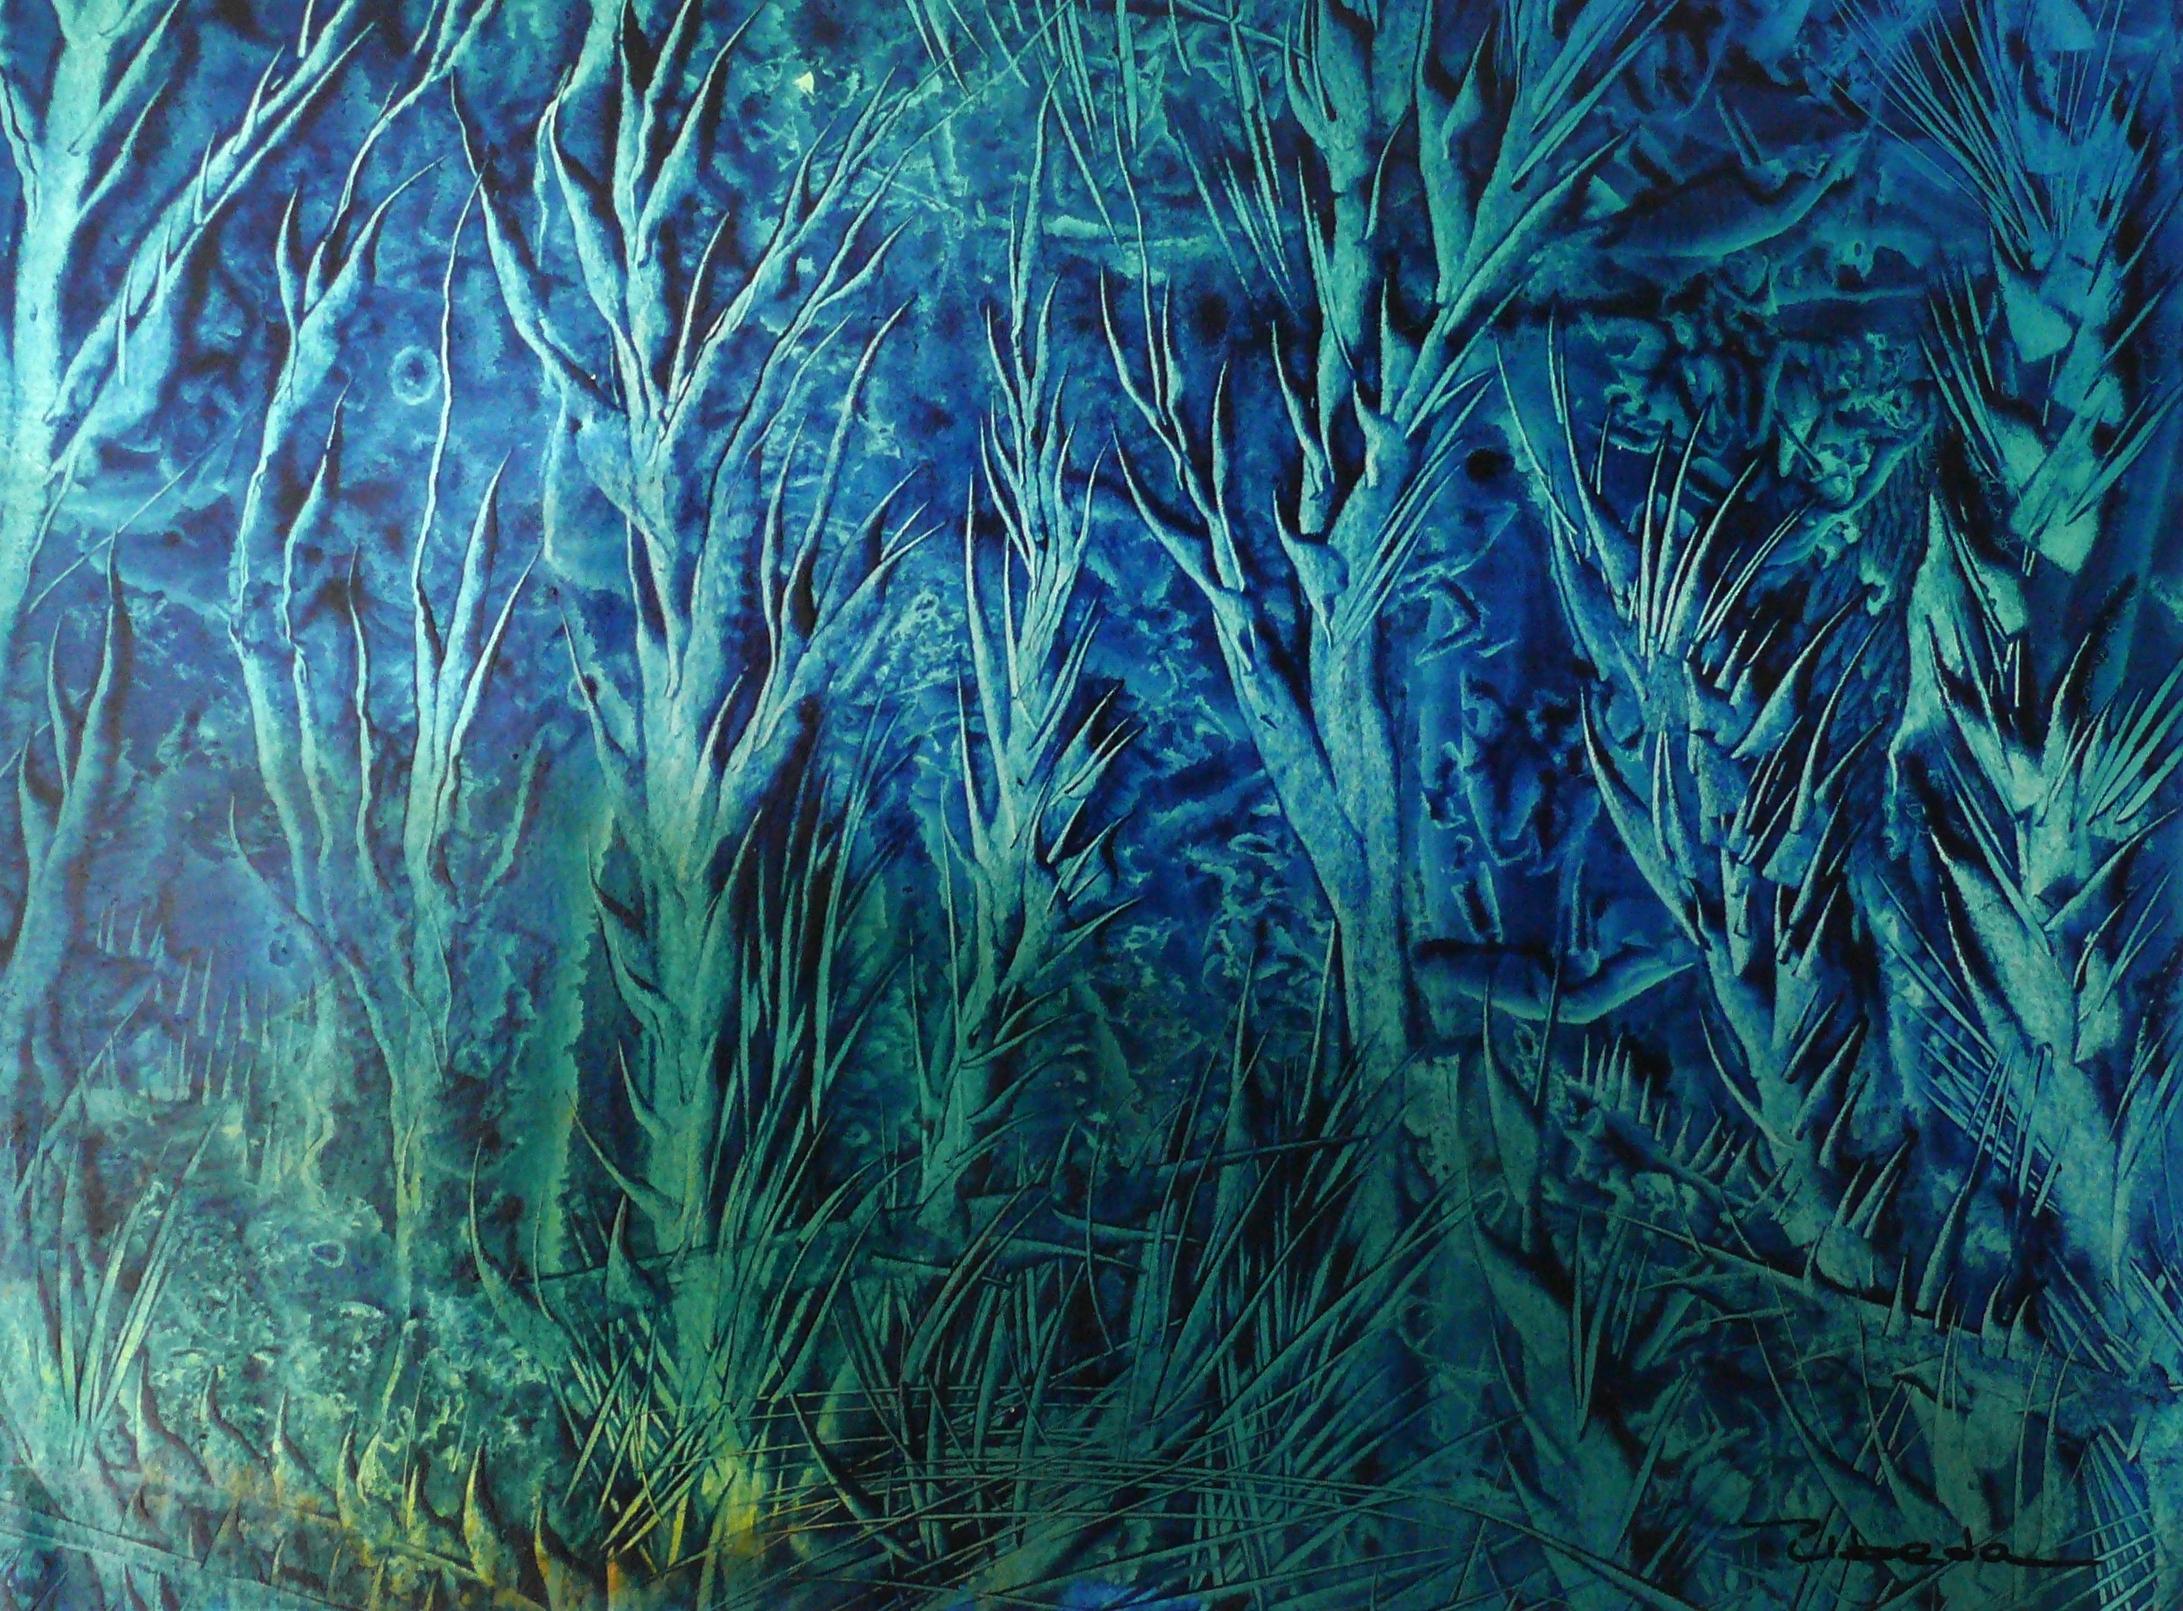 Série Under The Sea, Nº 10. Úbeda. Peinture à l'huile paysage sous-marin bleu vert.  
Huile sur papier, (H) 28 x (L) 39 X (P) 0,2 cm.
Auteur : Úbeda.

Les feuilles qui composent ce projet évoquent un monde onirique de fonds marins. Le peintre